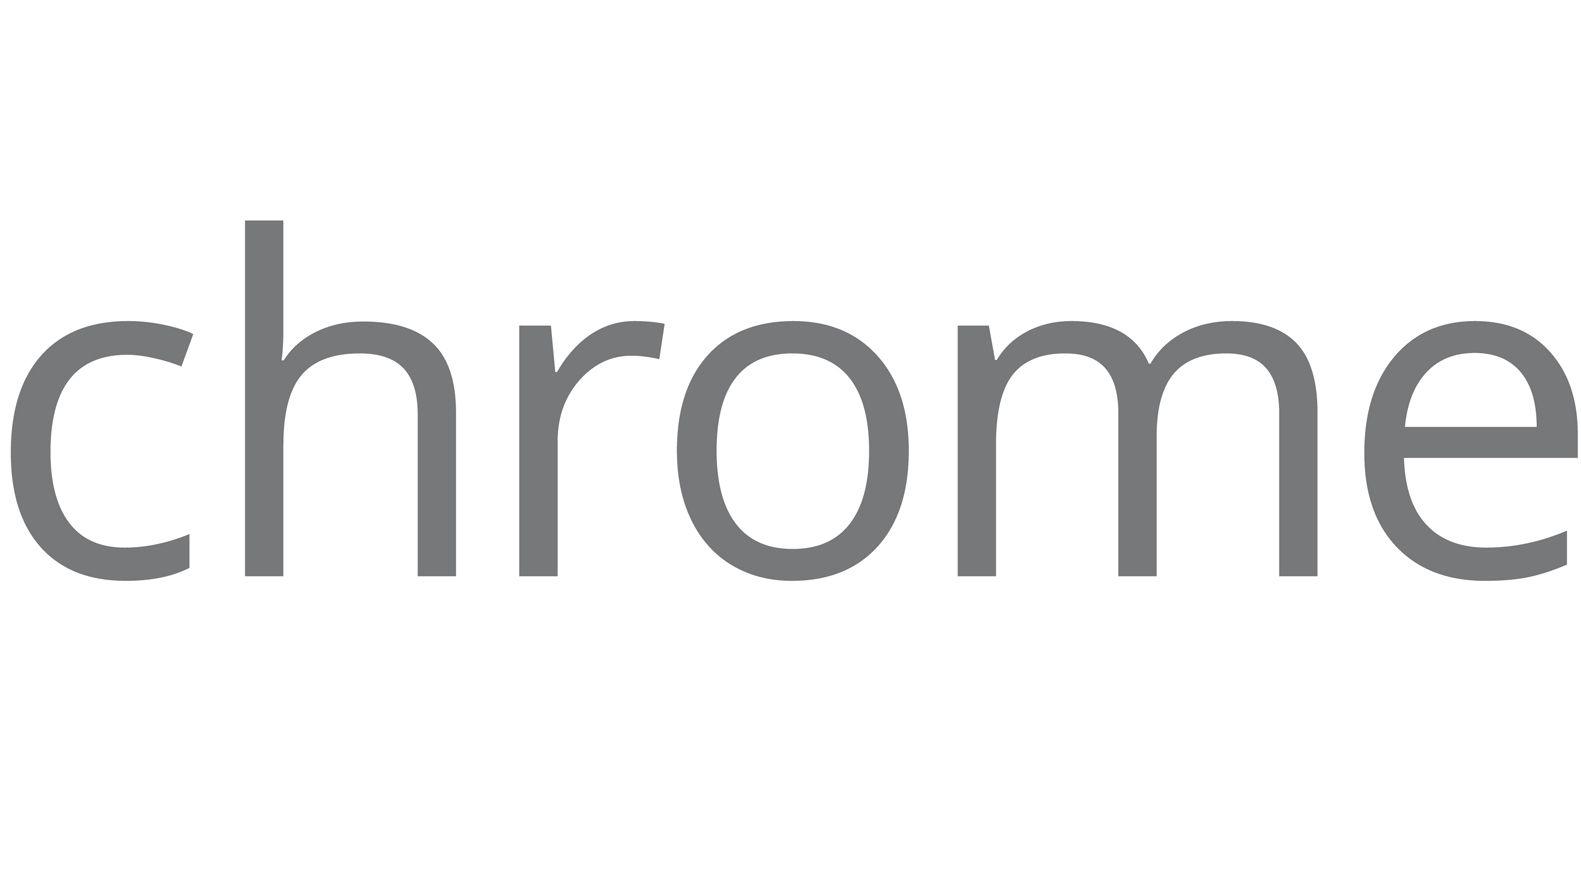 Chrome Browser Logo - Chrome Logo, Chrome Symbol, Meaning, History and Evolution